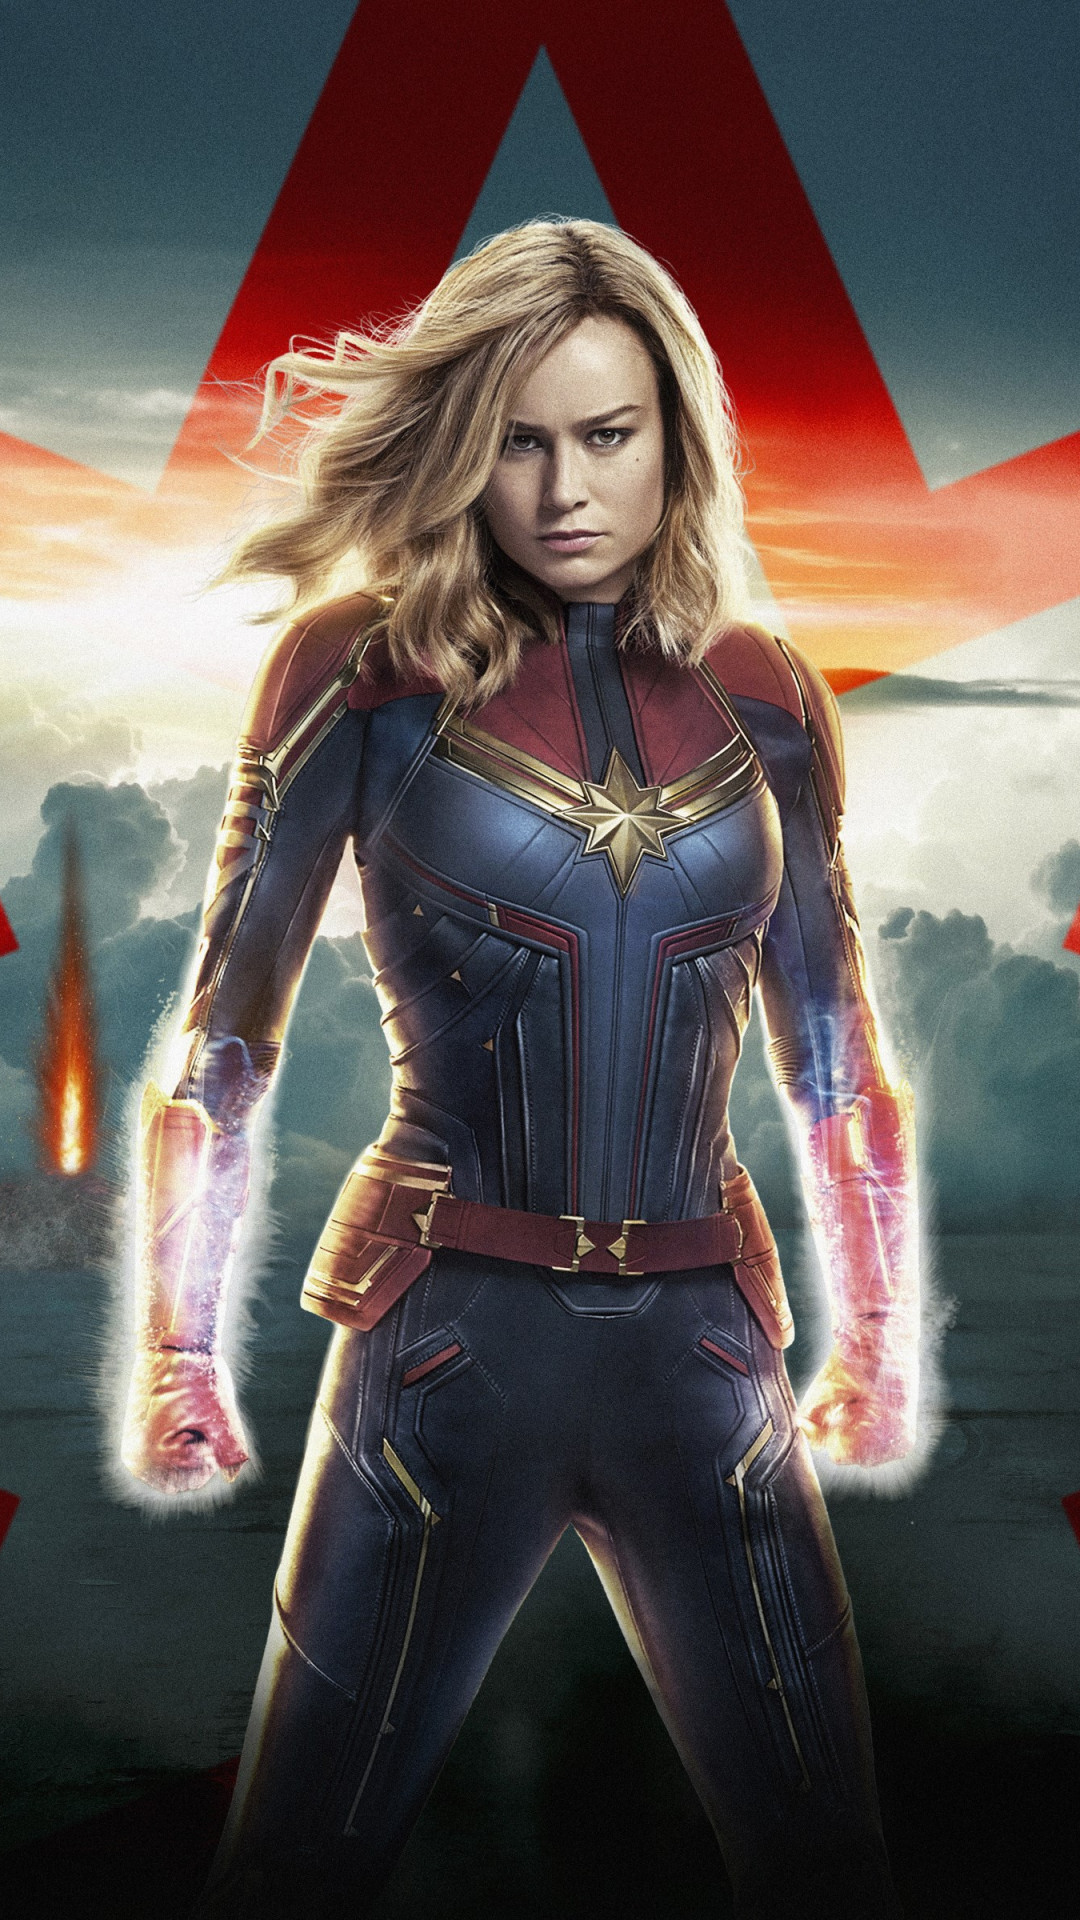 Captain Marvel poster wallpaper 1080x1920